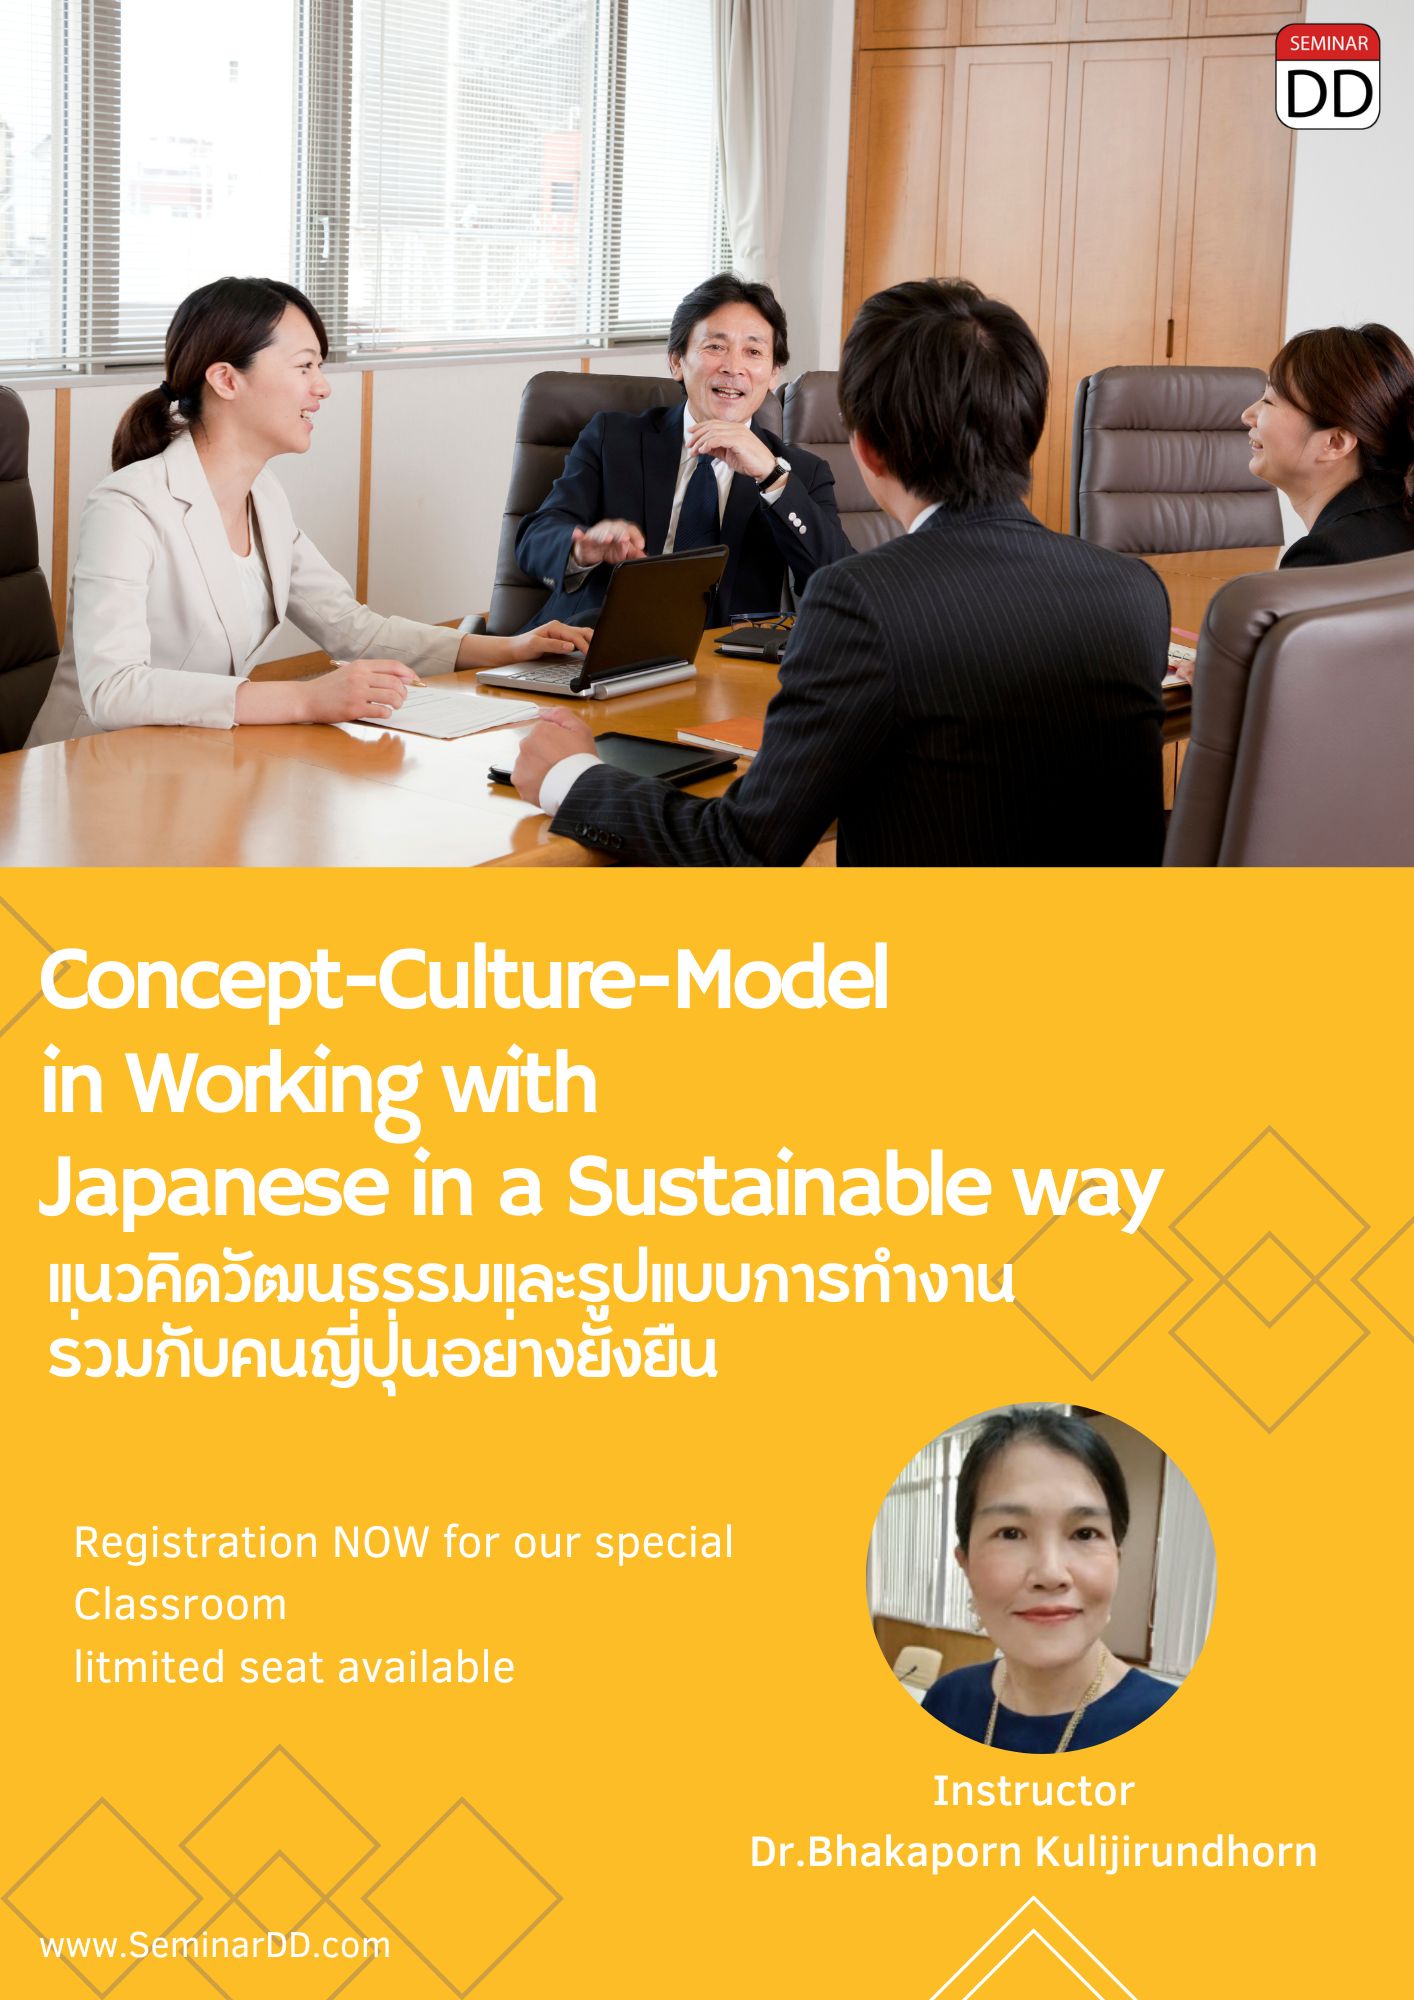 หลักสูตร แนวคิดวัฒนธรรมและรูปแบบการทำงานร่วมกับคนญี่ปุ่นอย่างยั่งยืน Concept  - Cultur- Model in Working with Japanese in a Sustainable way